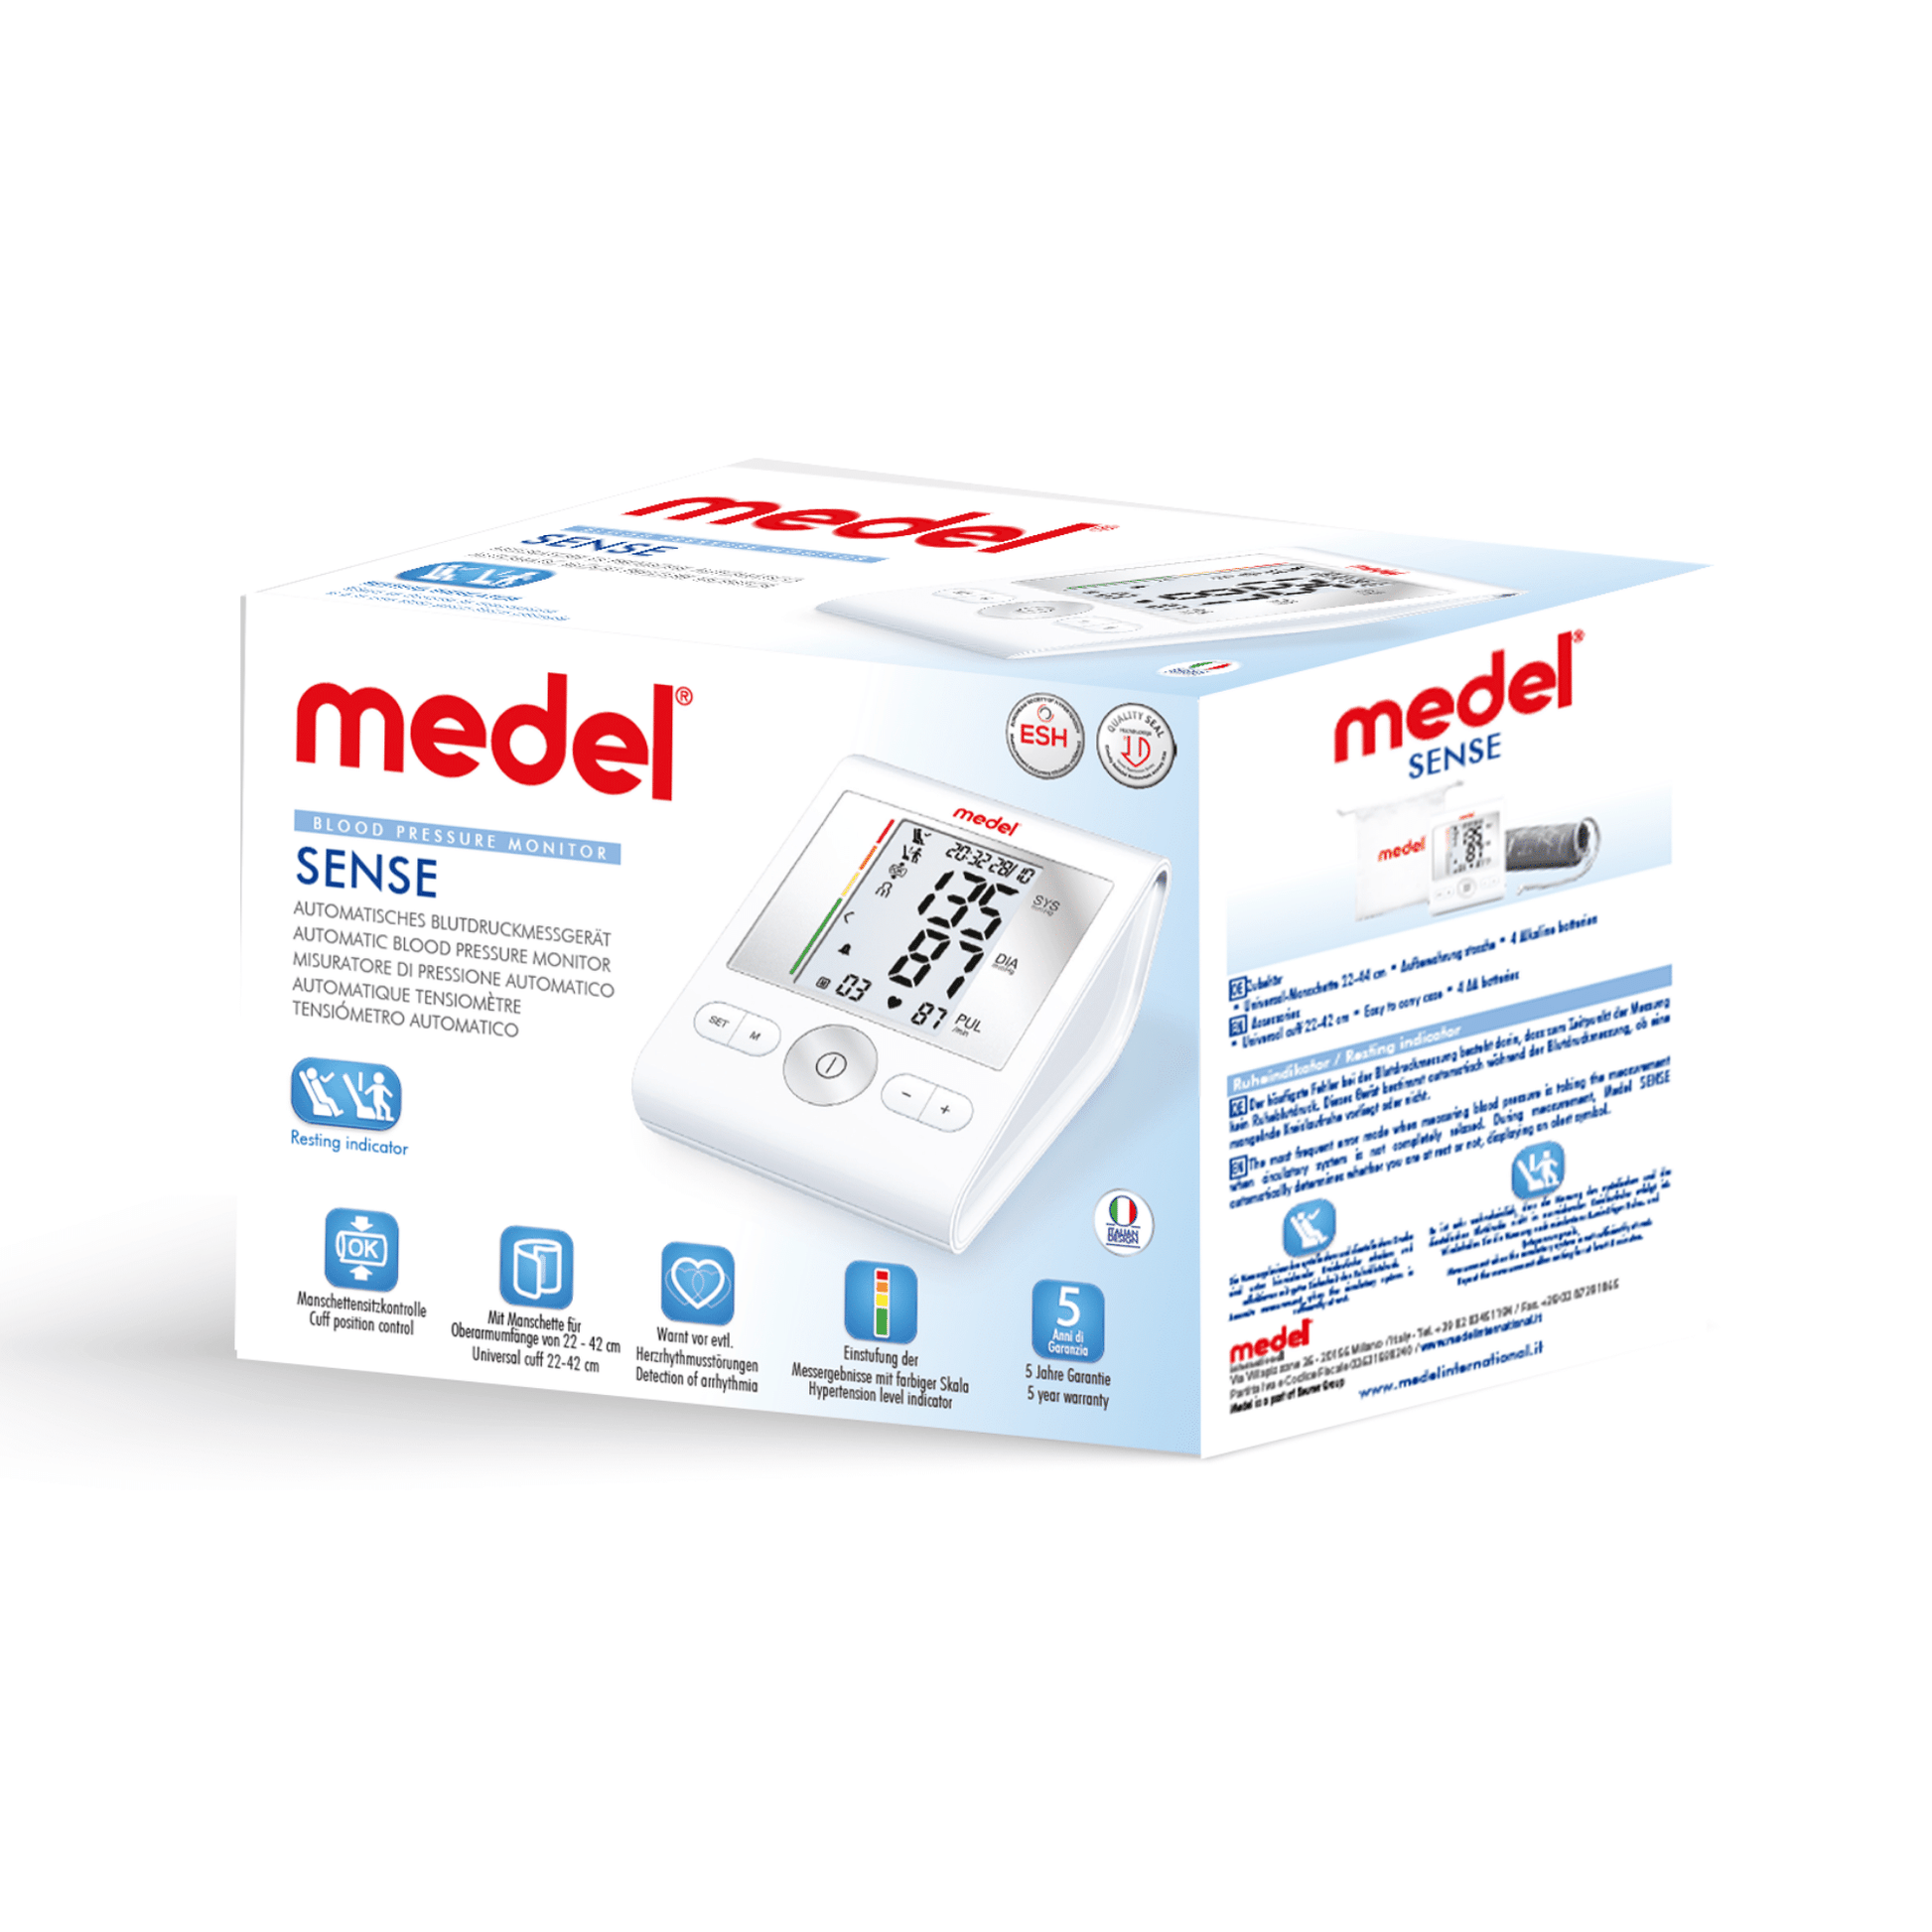 Eine Box mit dem Medel Sense Blutdruckmessgerät von Beurer GmbH mit Informationen zum Produkt und Gesundheitssymbolen an den Seiten, auf einem weißen Hintergrund, mit der Technologie des Oberarm-Blutdruckmessgeräts ausgestattet.